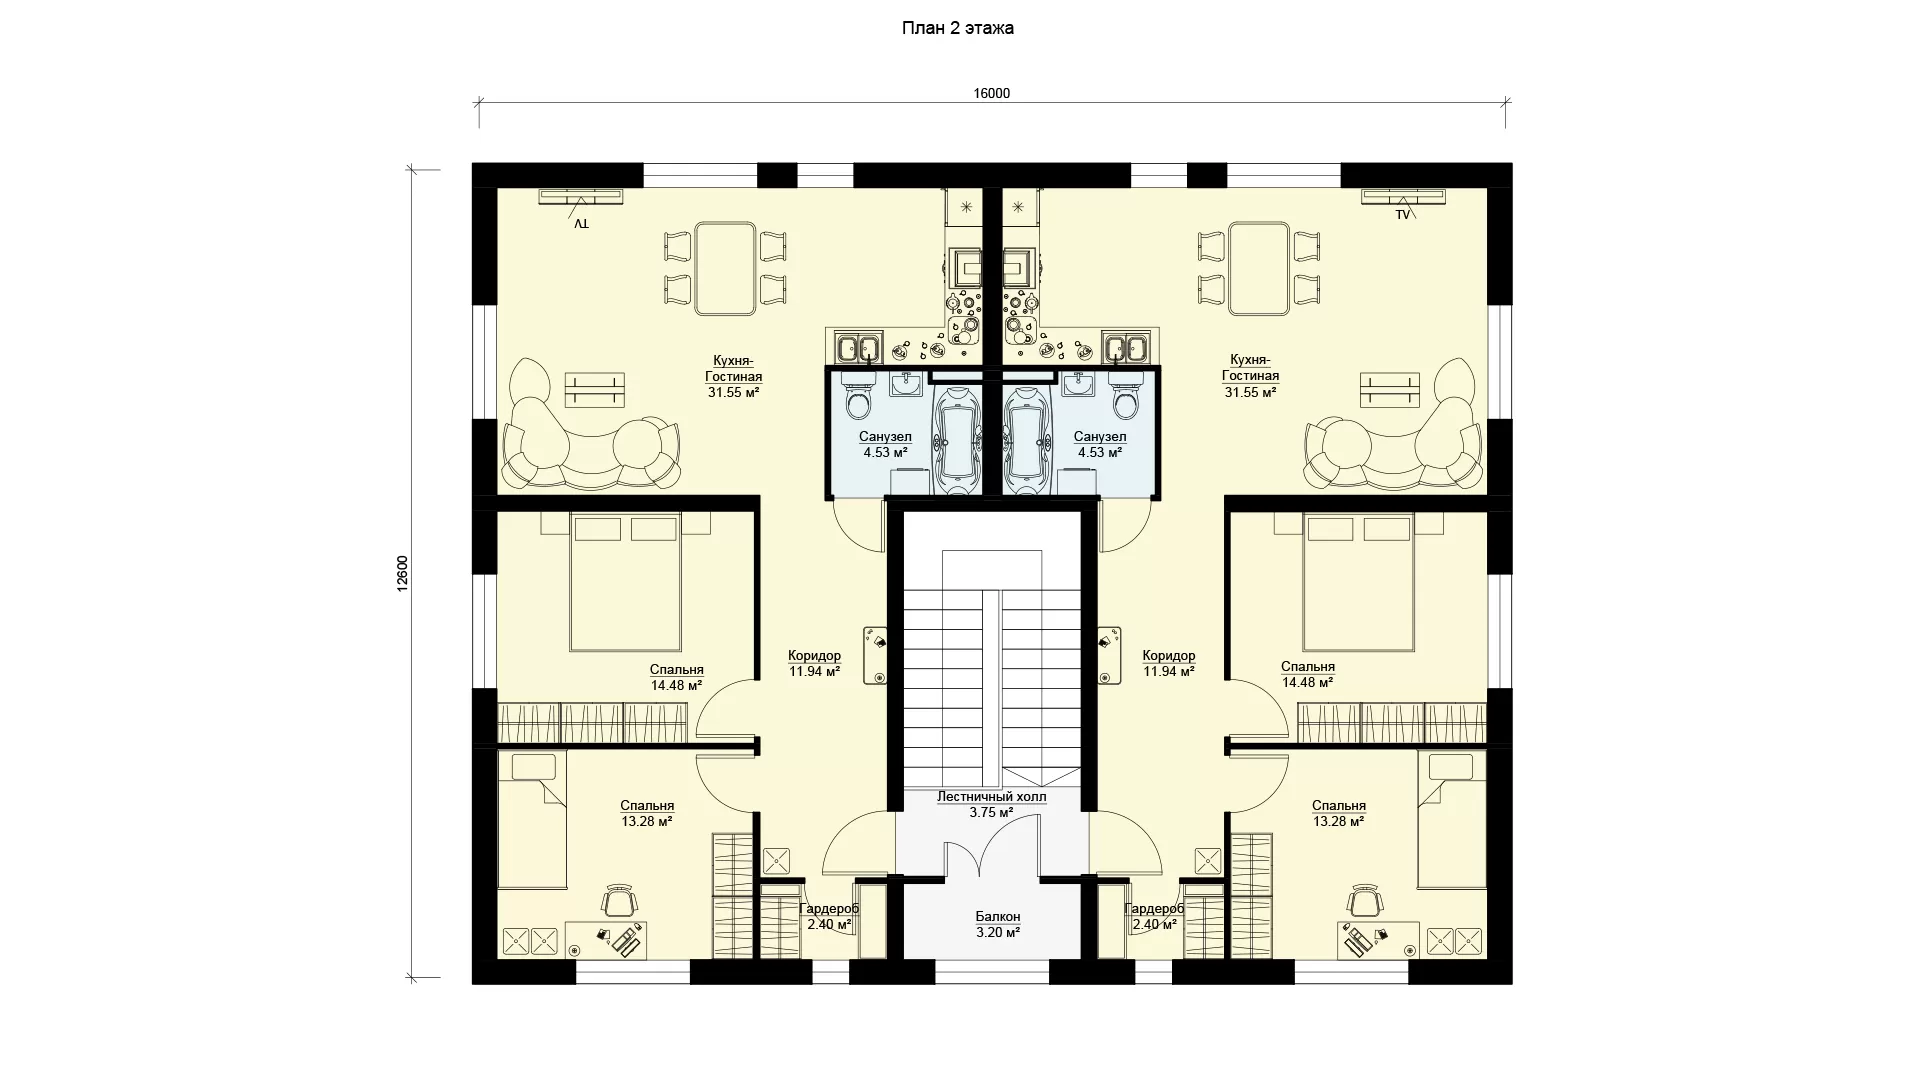 Планировка второго этажа проекта МС-346 - дома на 4 квартиры